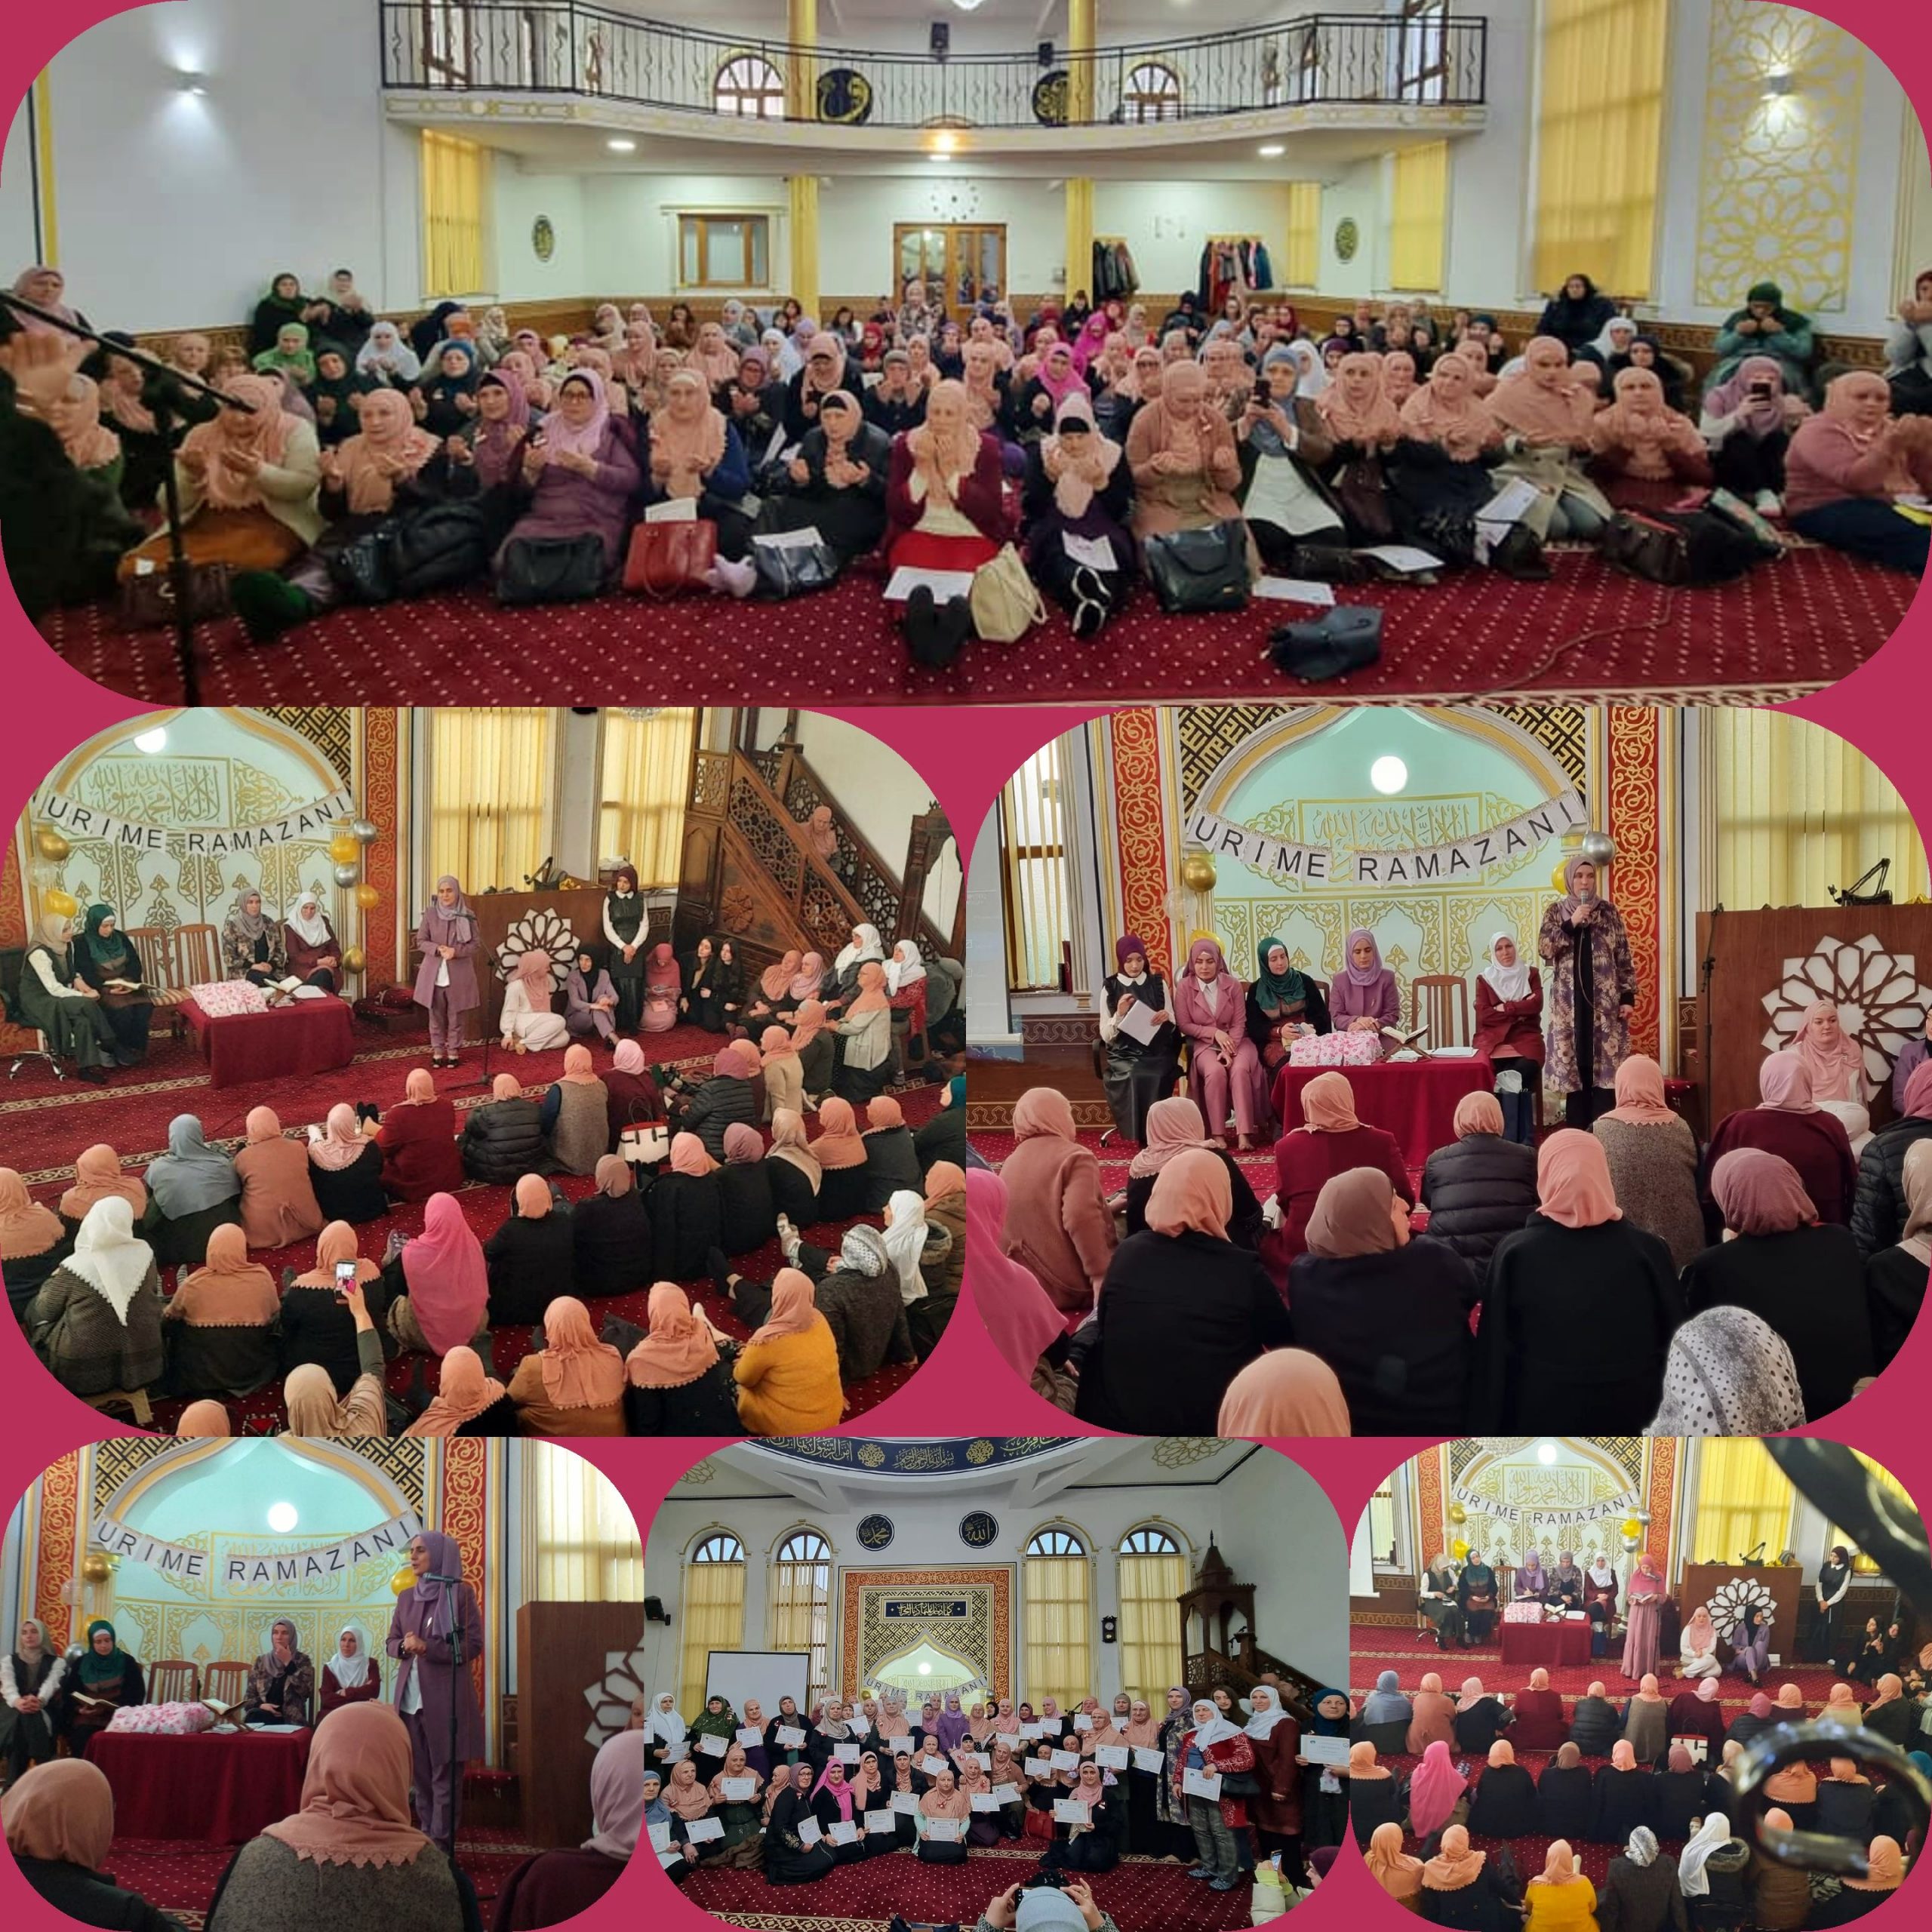 احتفالية ترحيبية بشهر رمضان نظمها قسم المرأة بإدارة المشيخة الإسلامية في محافظة فوشتري بكوسوفا